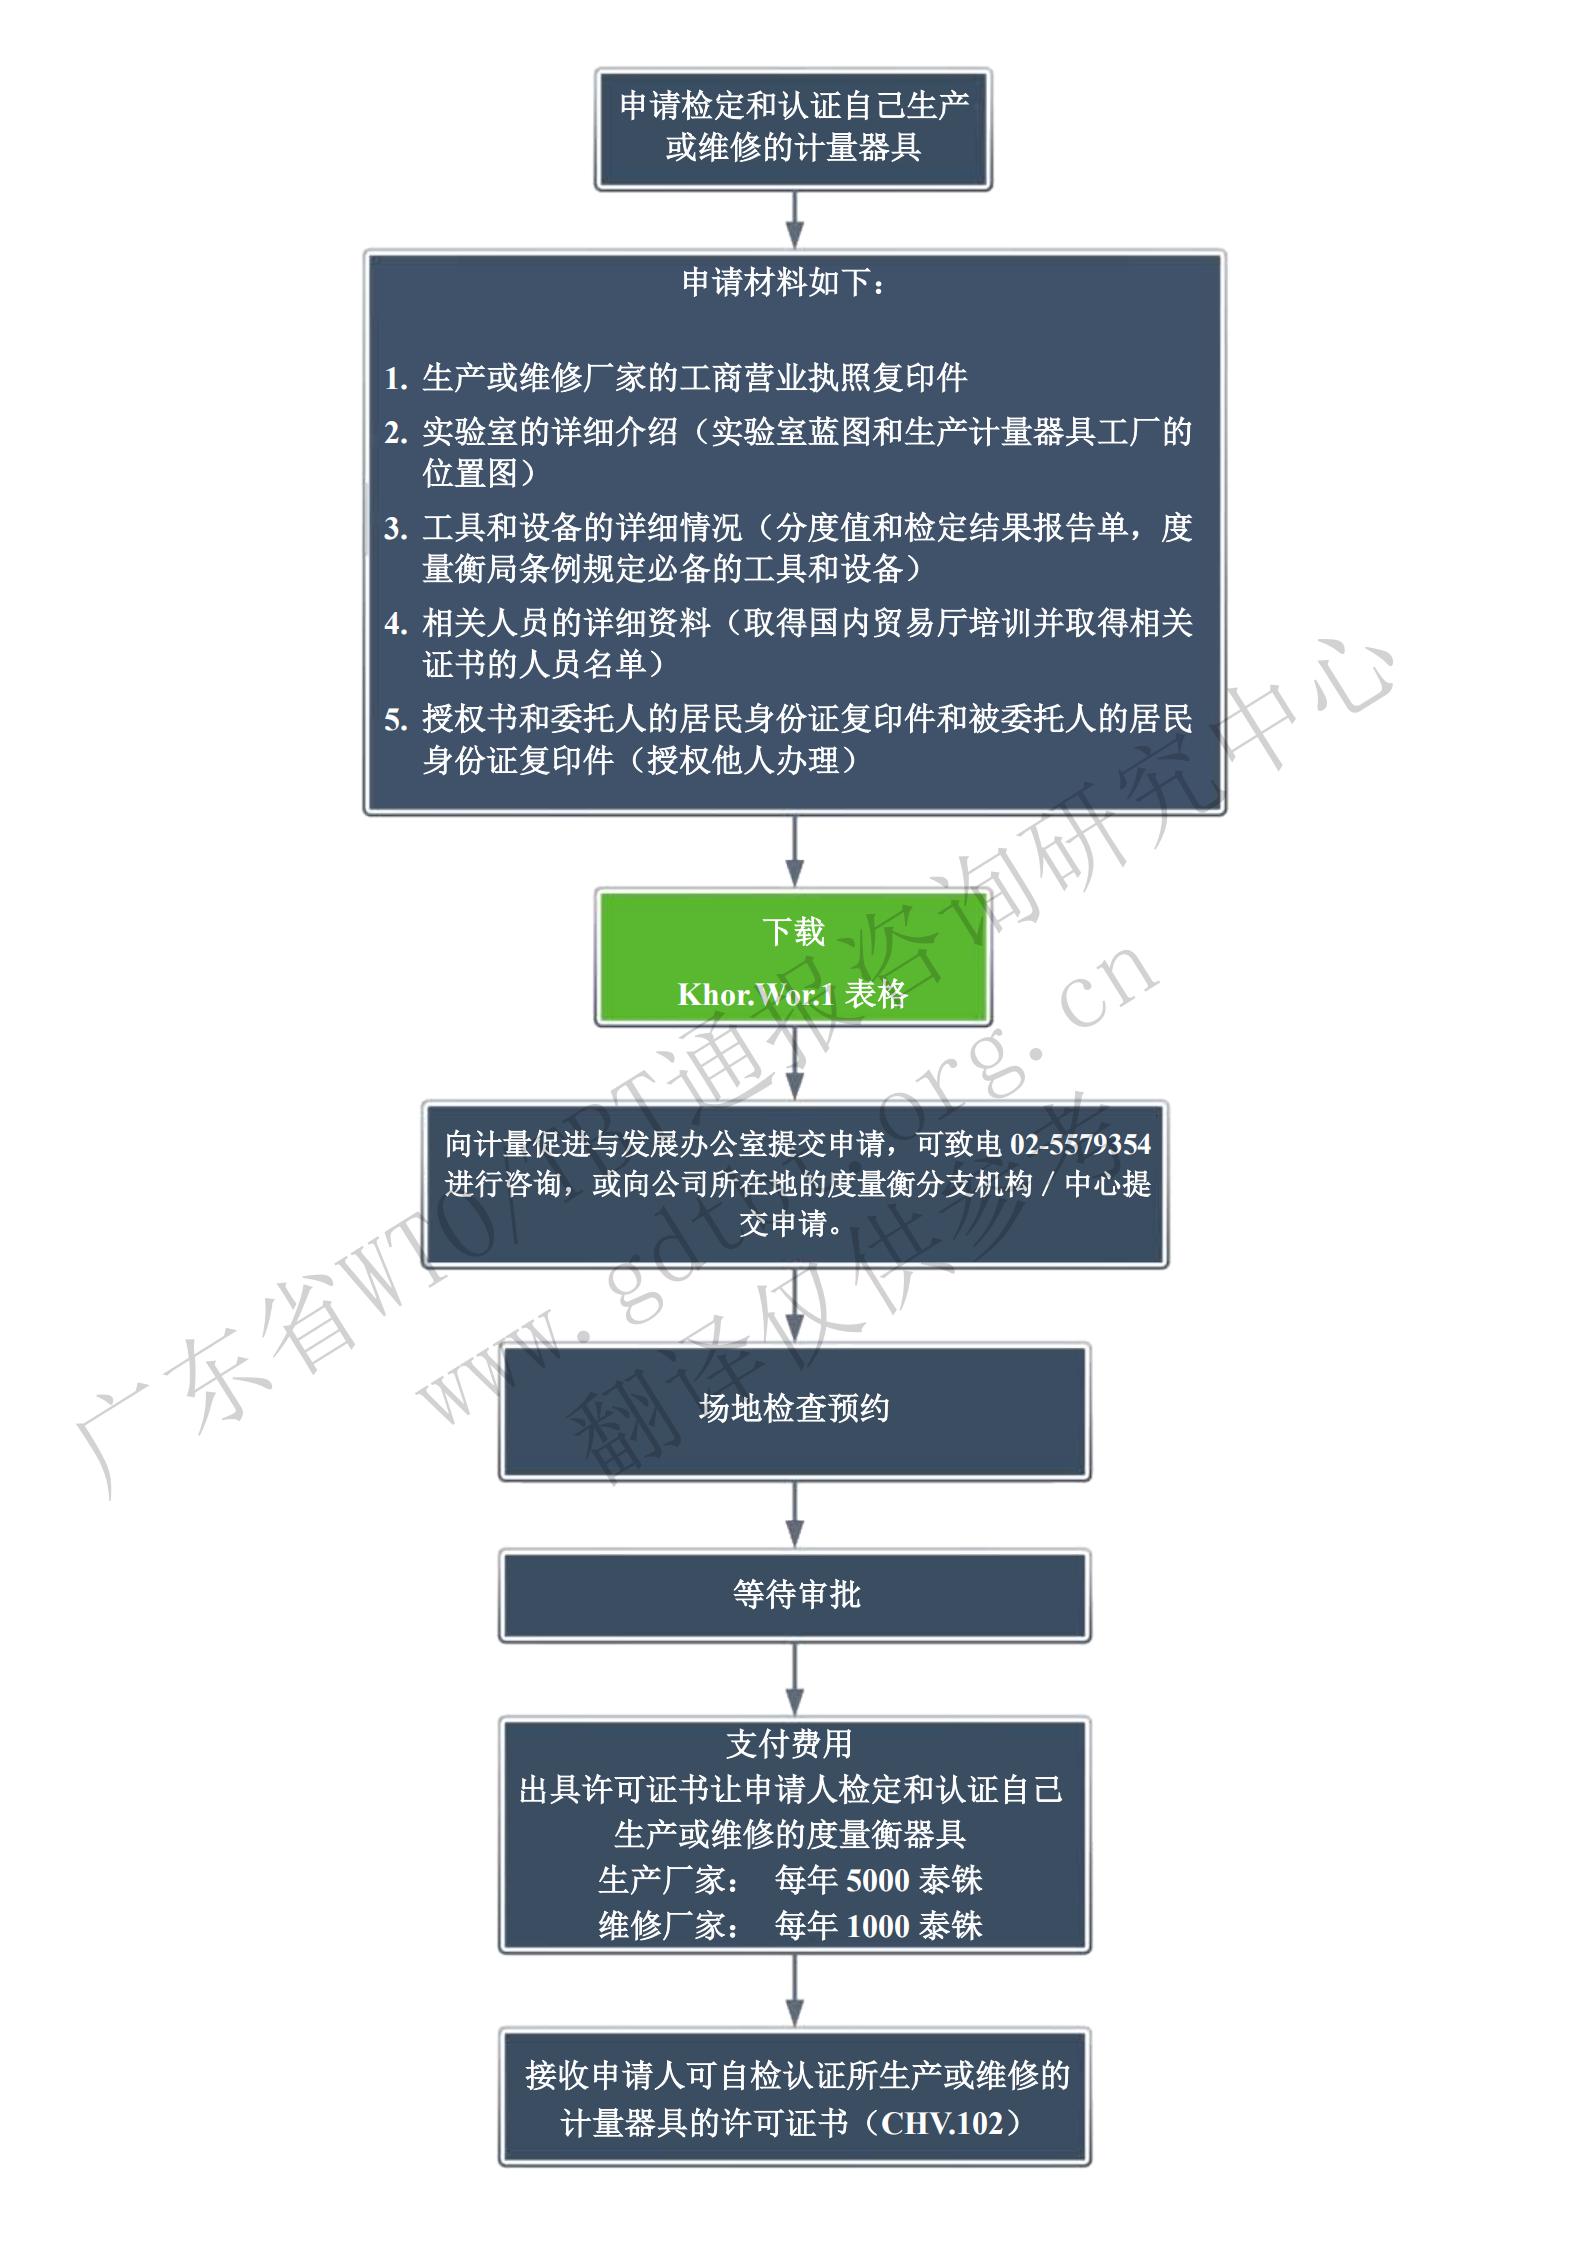 6.自检申请步骤步骤-限制_01.jpg